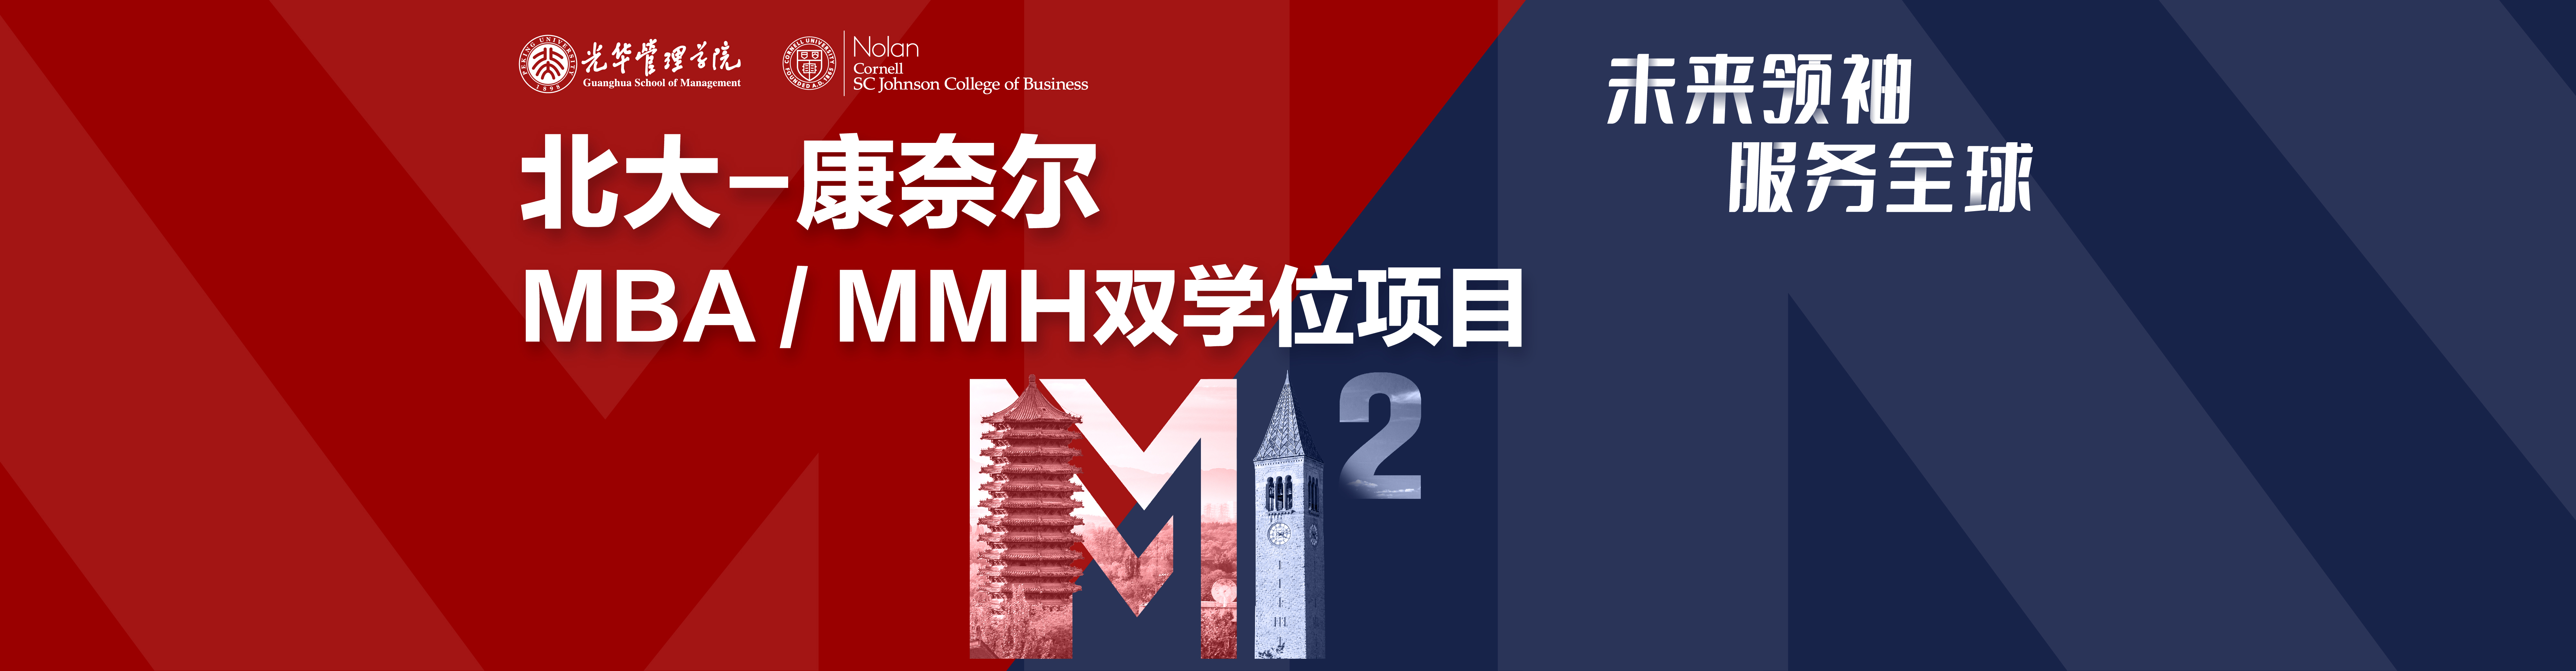 北京大学光华管理学院MBA